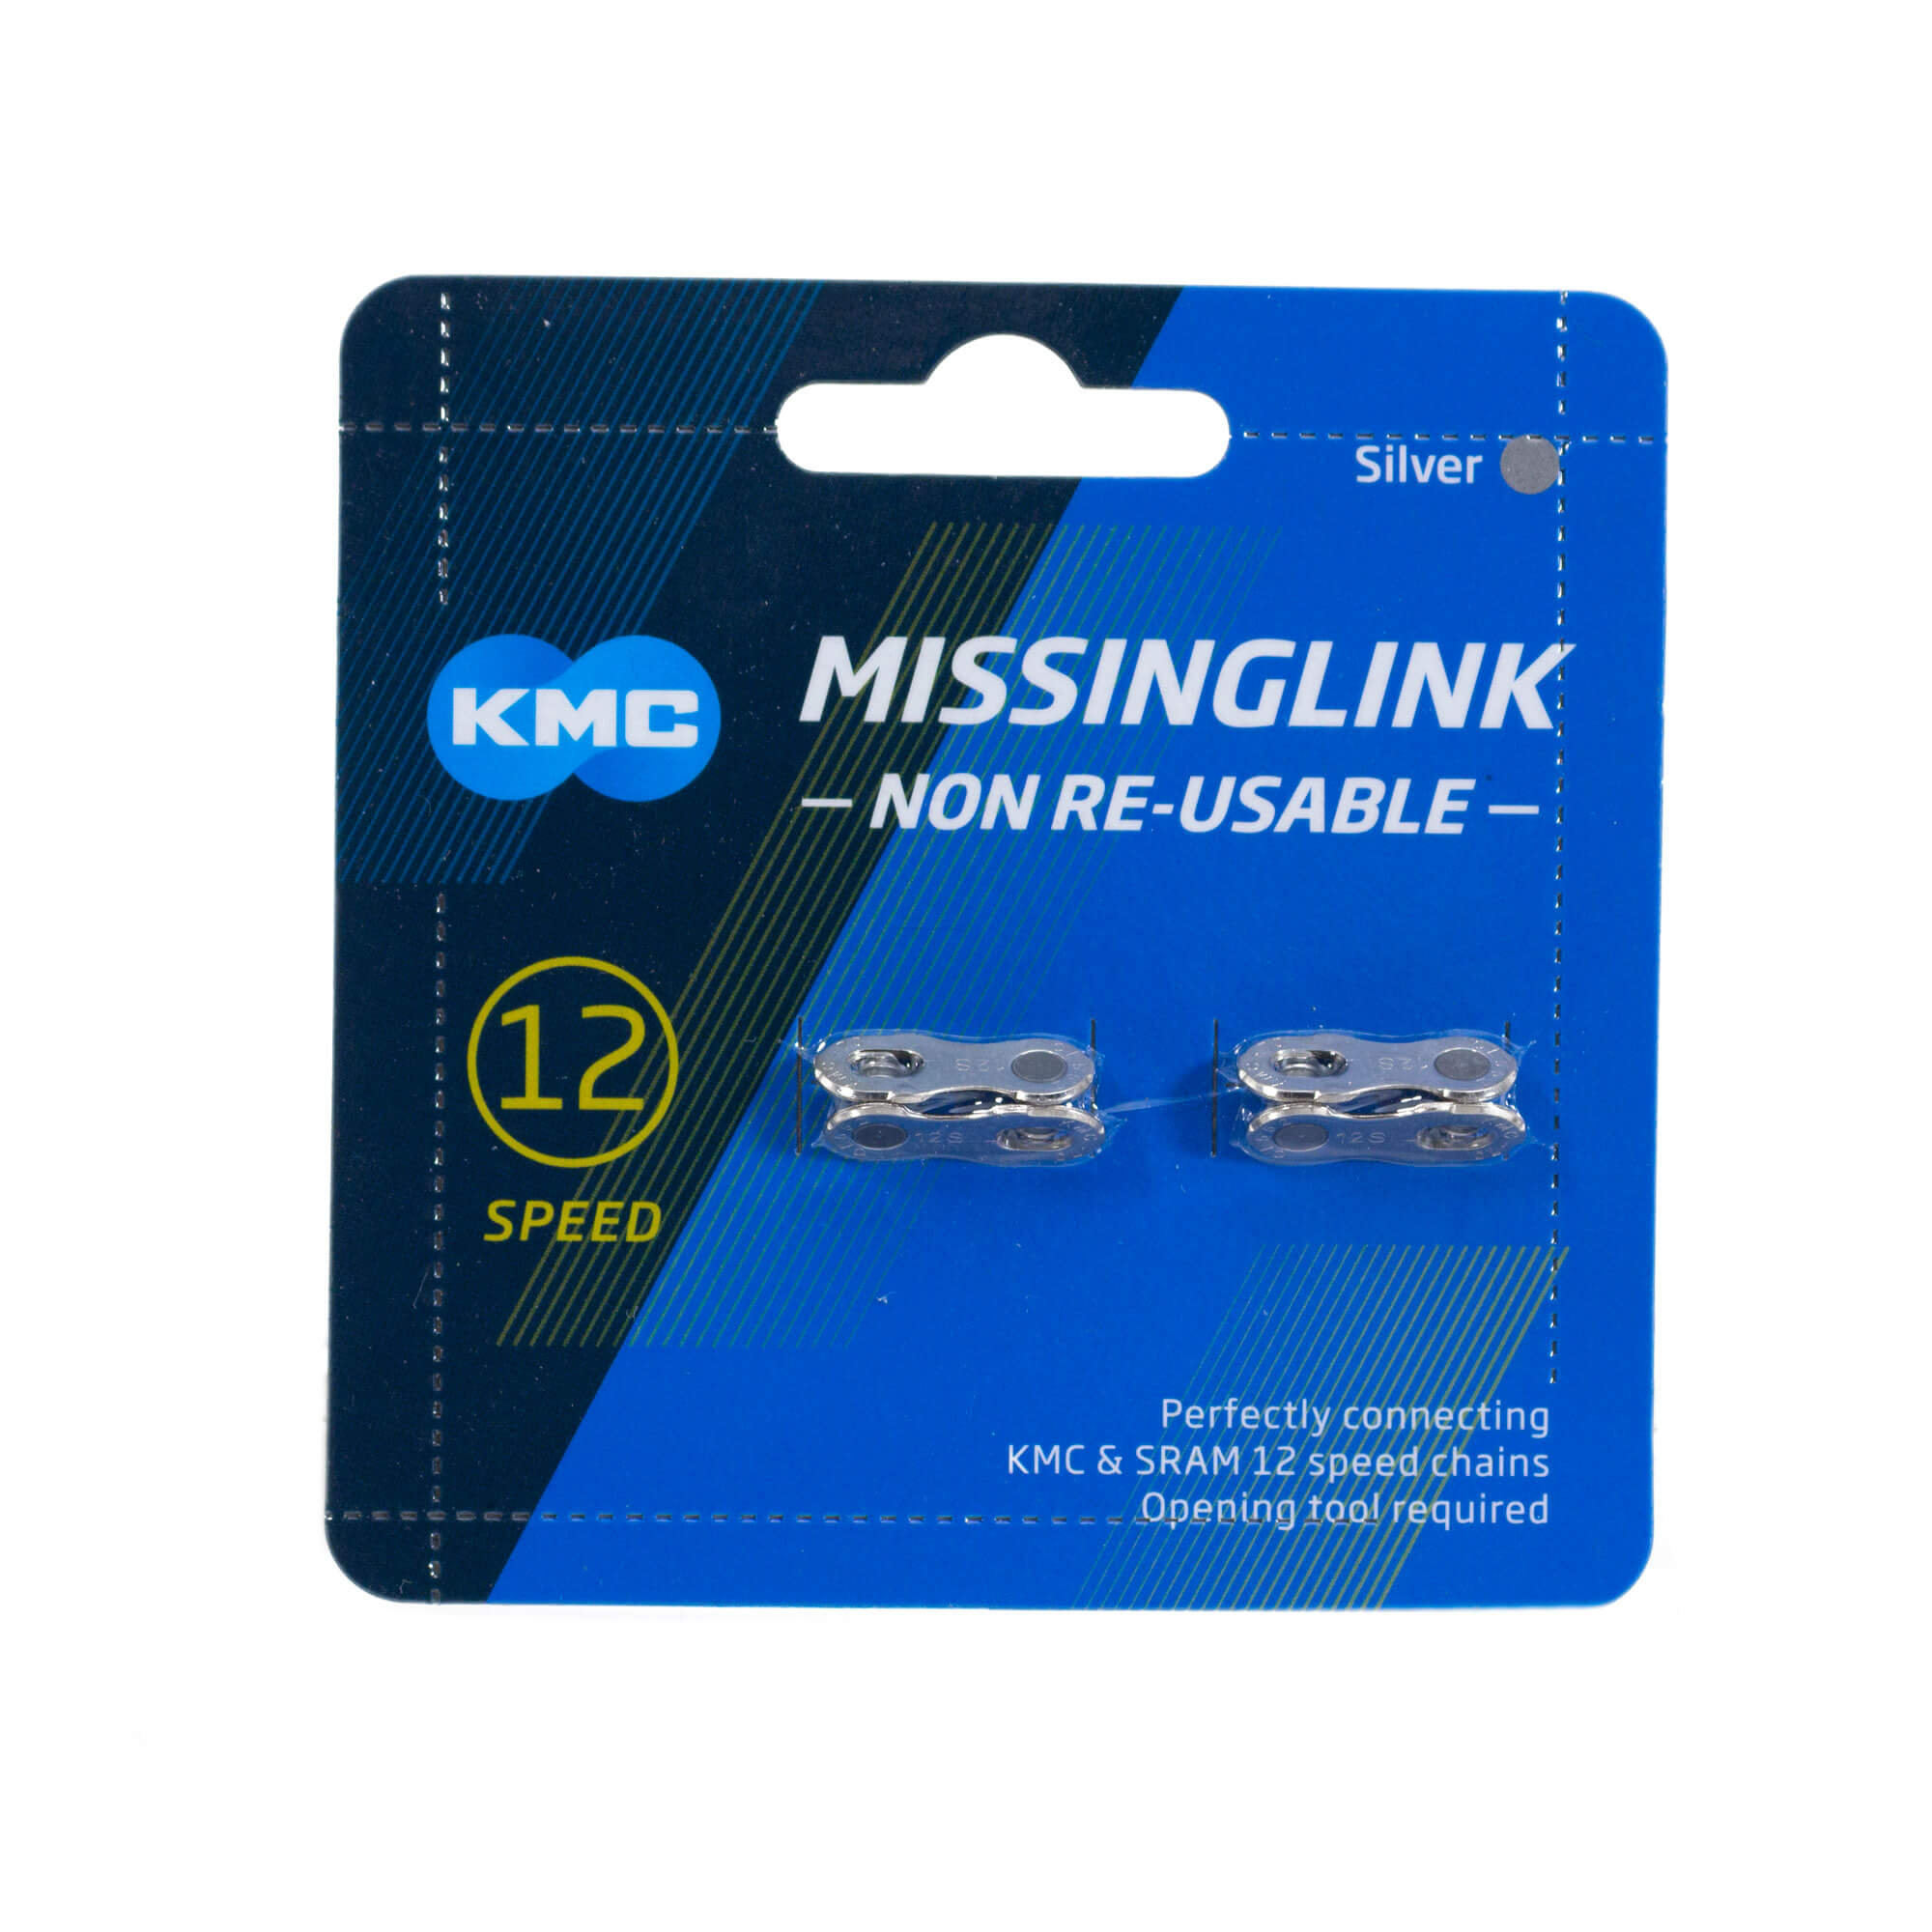 Missing Link 12 v. – KMC (Power link)